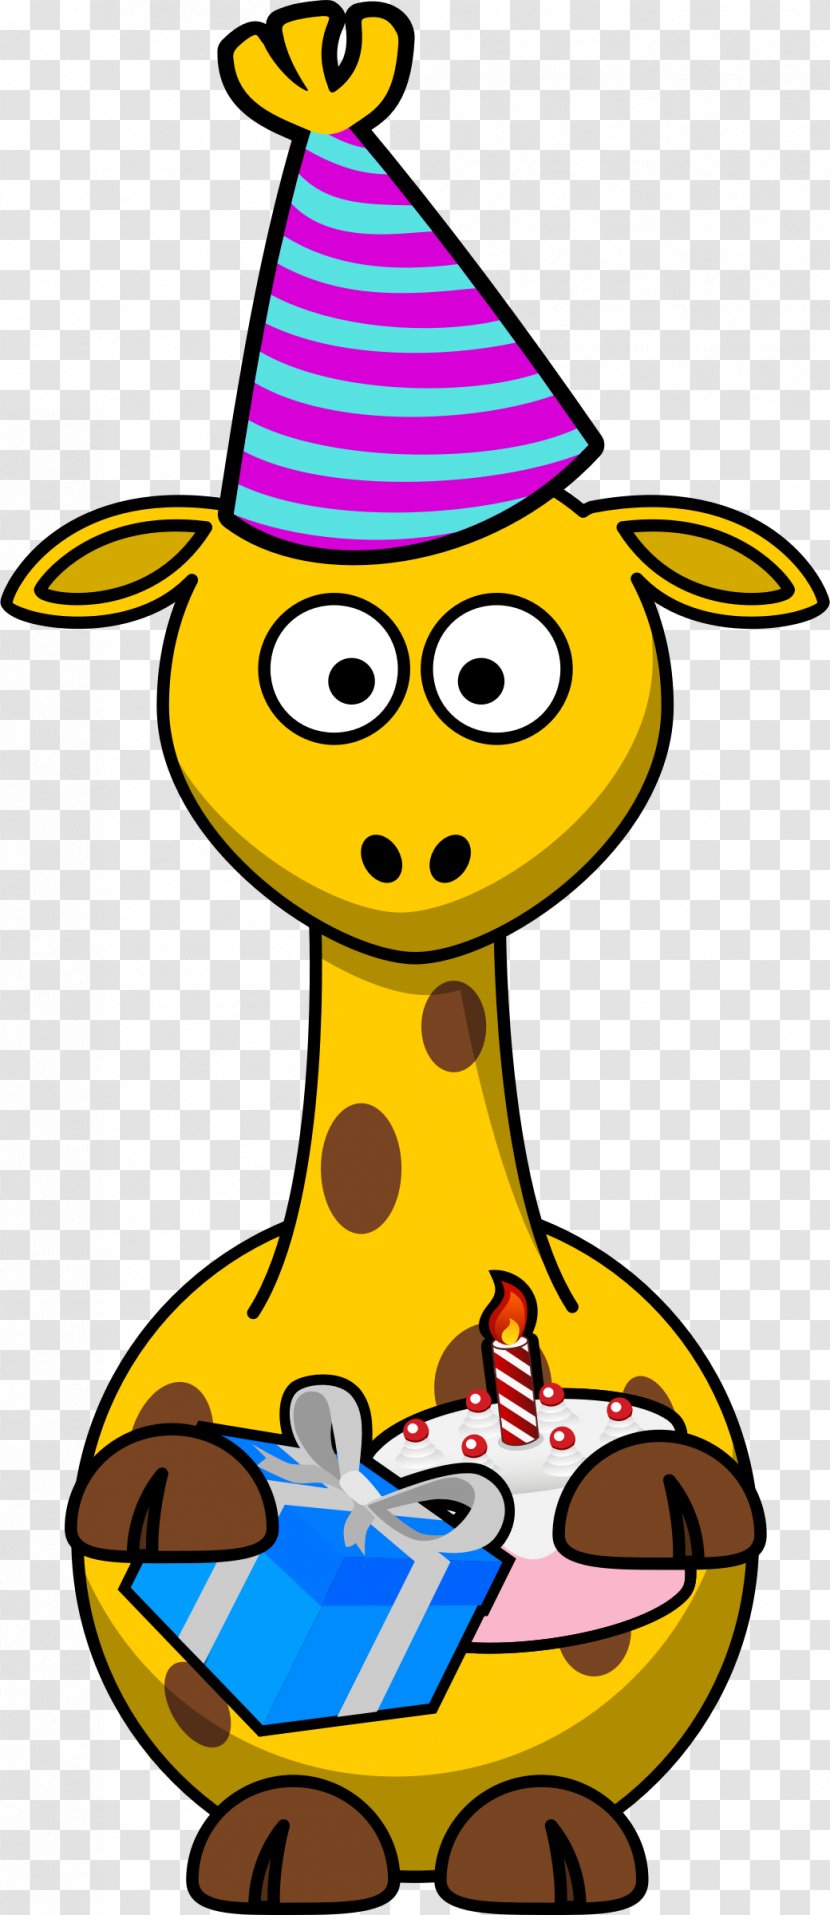 Baby Giraffes Clip Art - Organism - Giraffe Transparent PNG